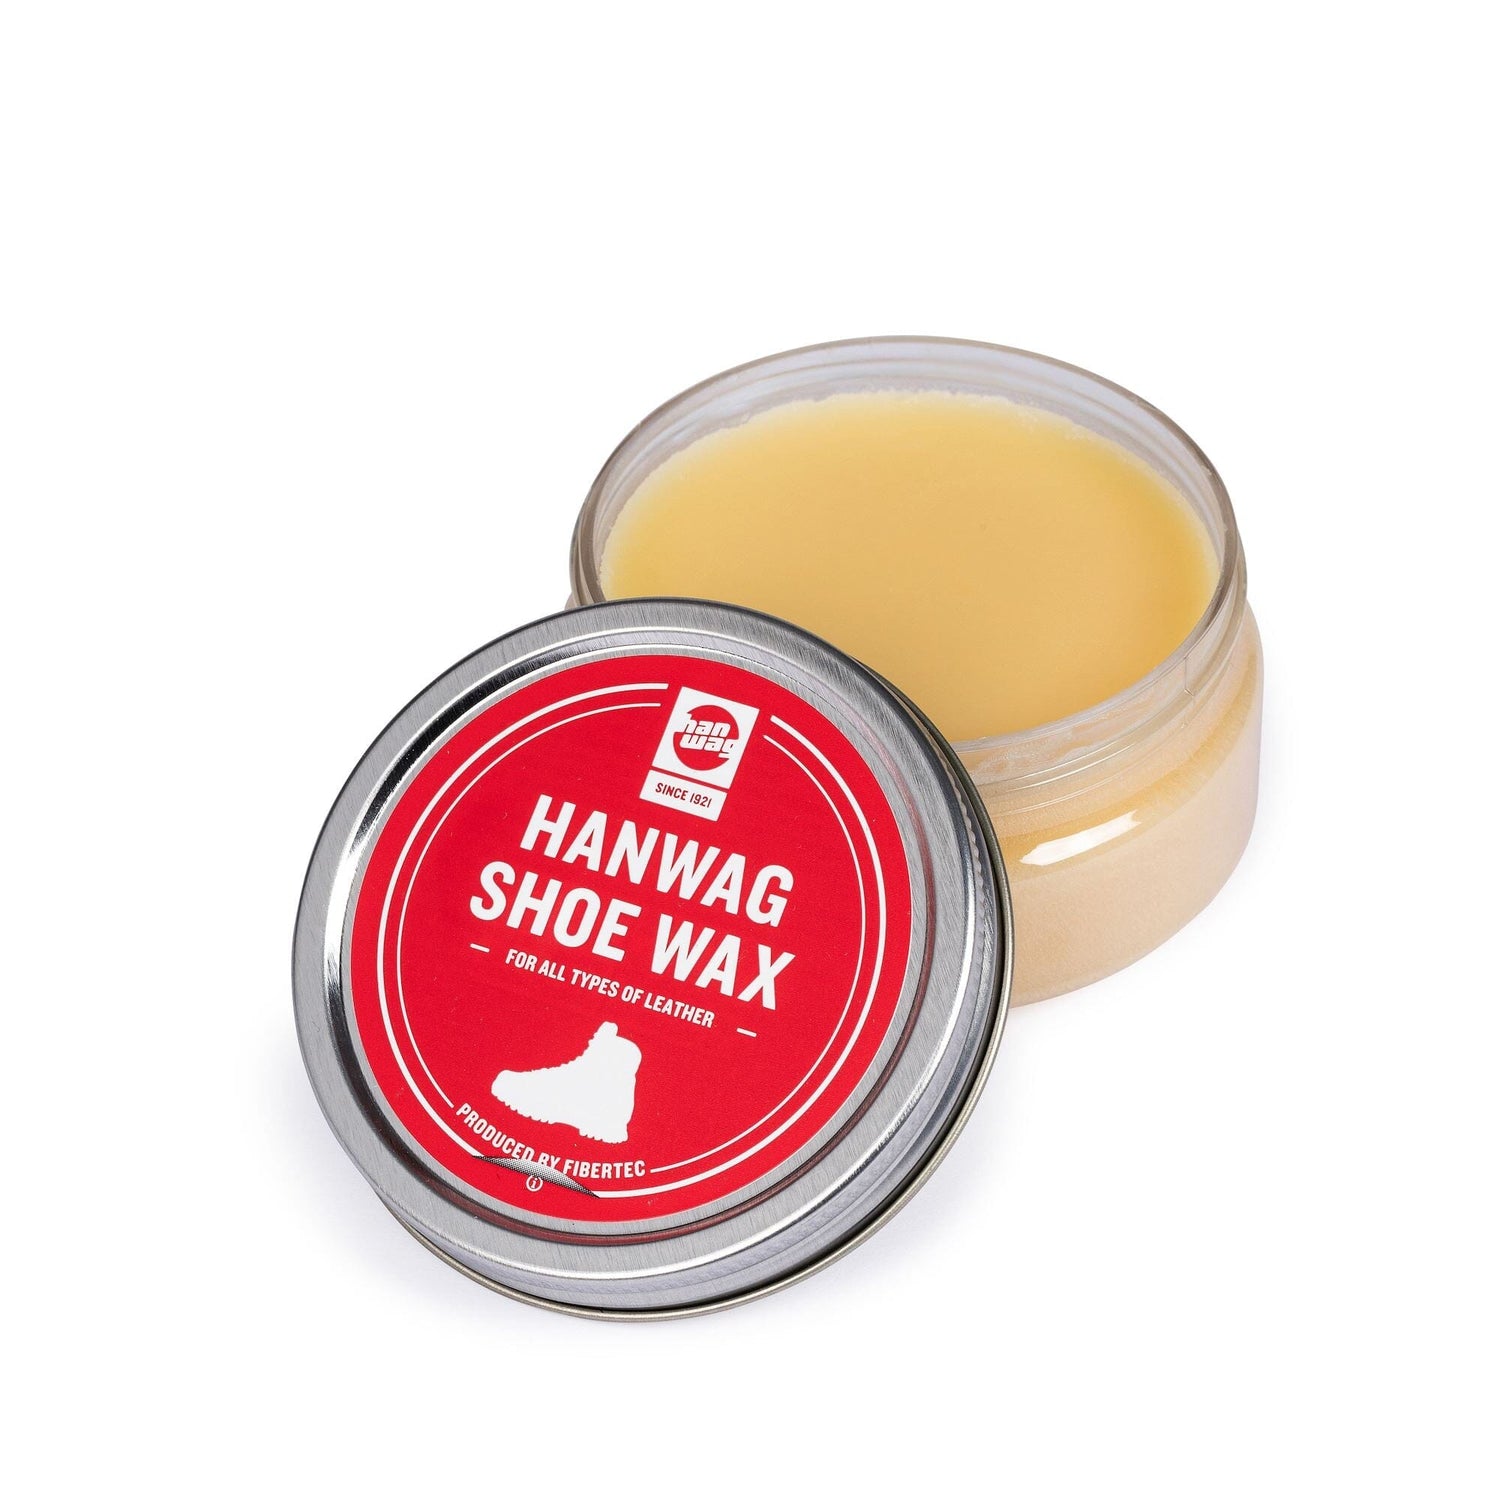 Hanwag - Shoe Wax - Beeswax, carnauba wax and lanolin - Weekendbee - sustainable sportswear